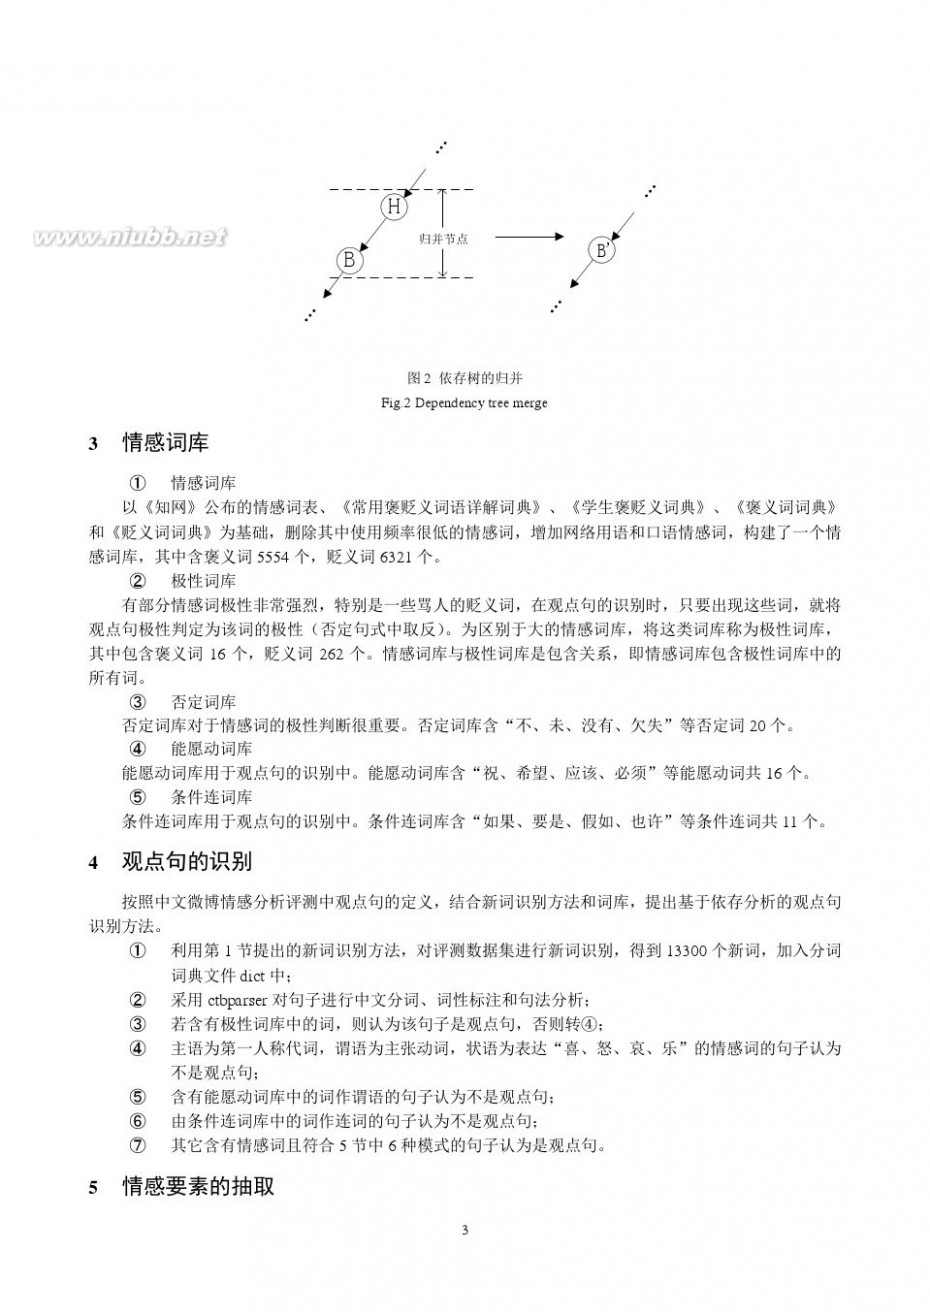 武汉海军工程大学 海军工程大学2012参评系统介绍